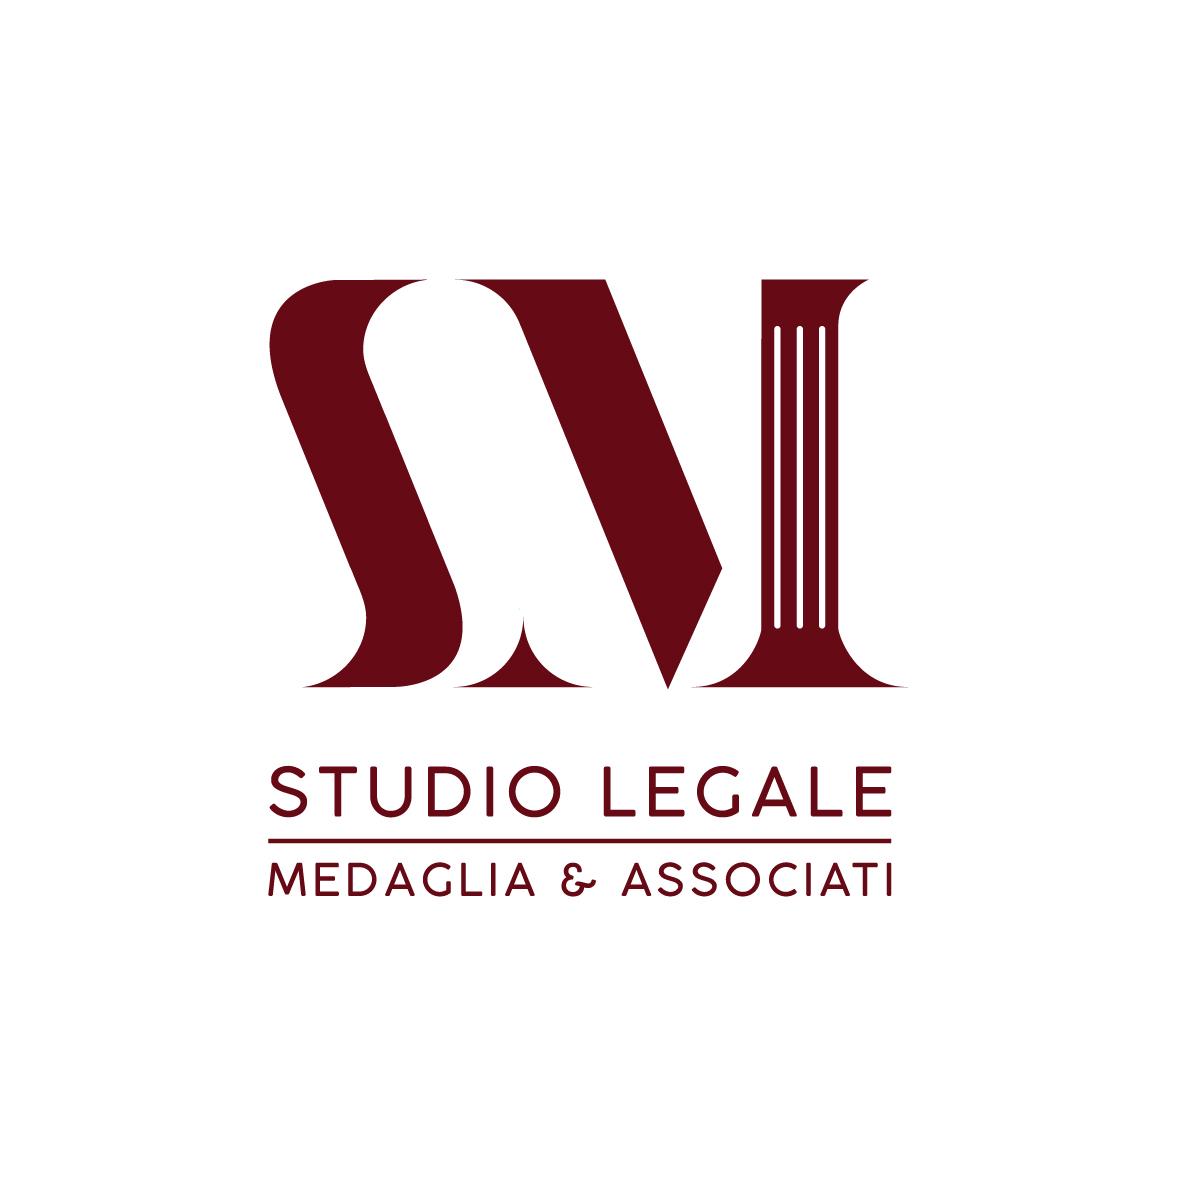 STUDIO LEGALE MEDAGLIA & ASSOCIATI